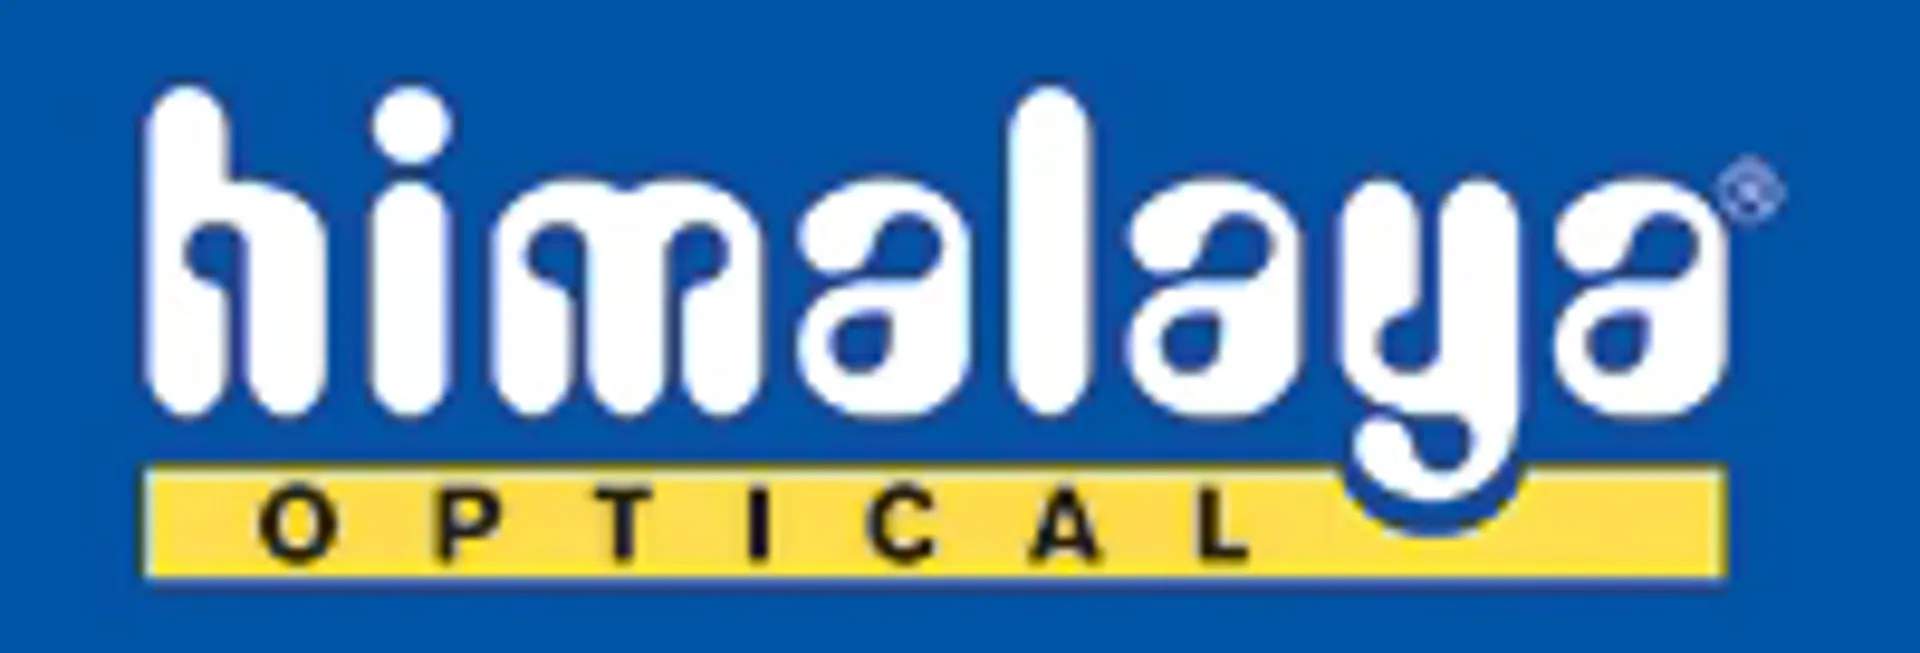 HIMALAYA OPTICAL logo current weekly ad